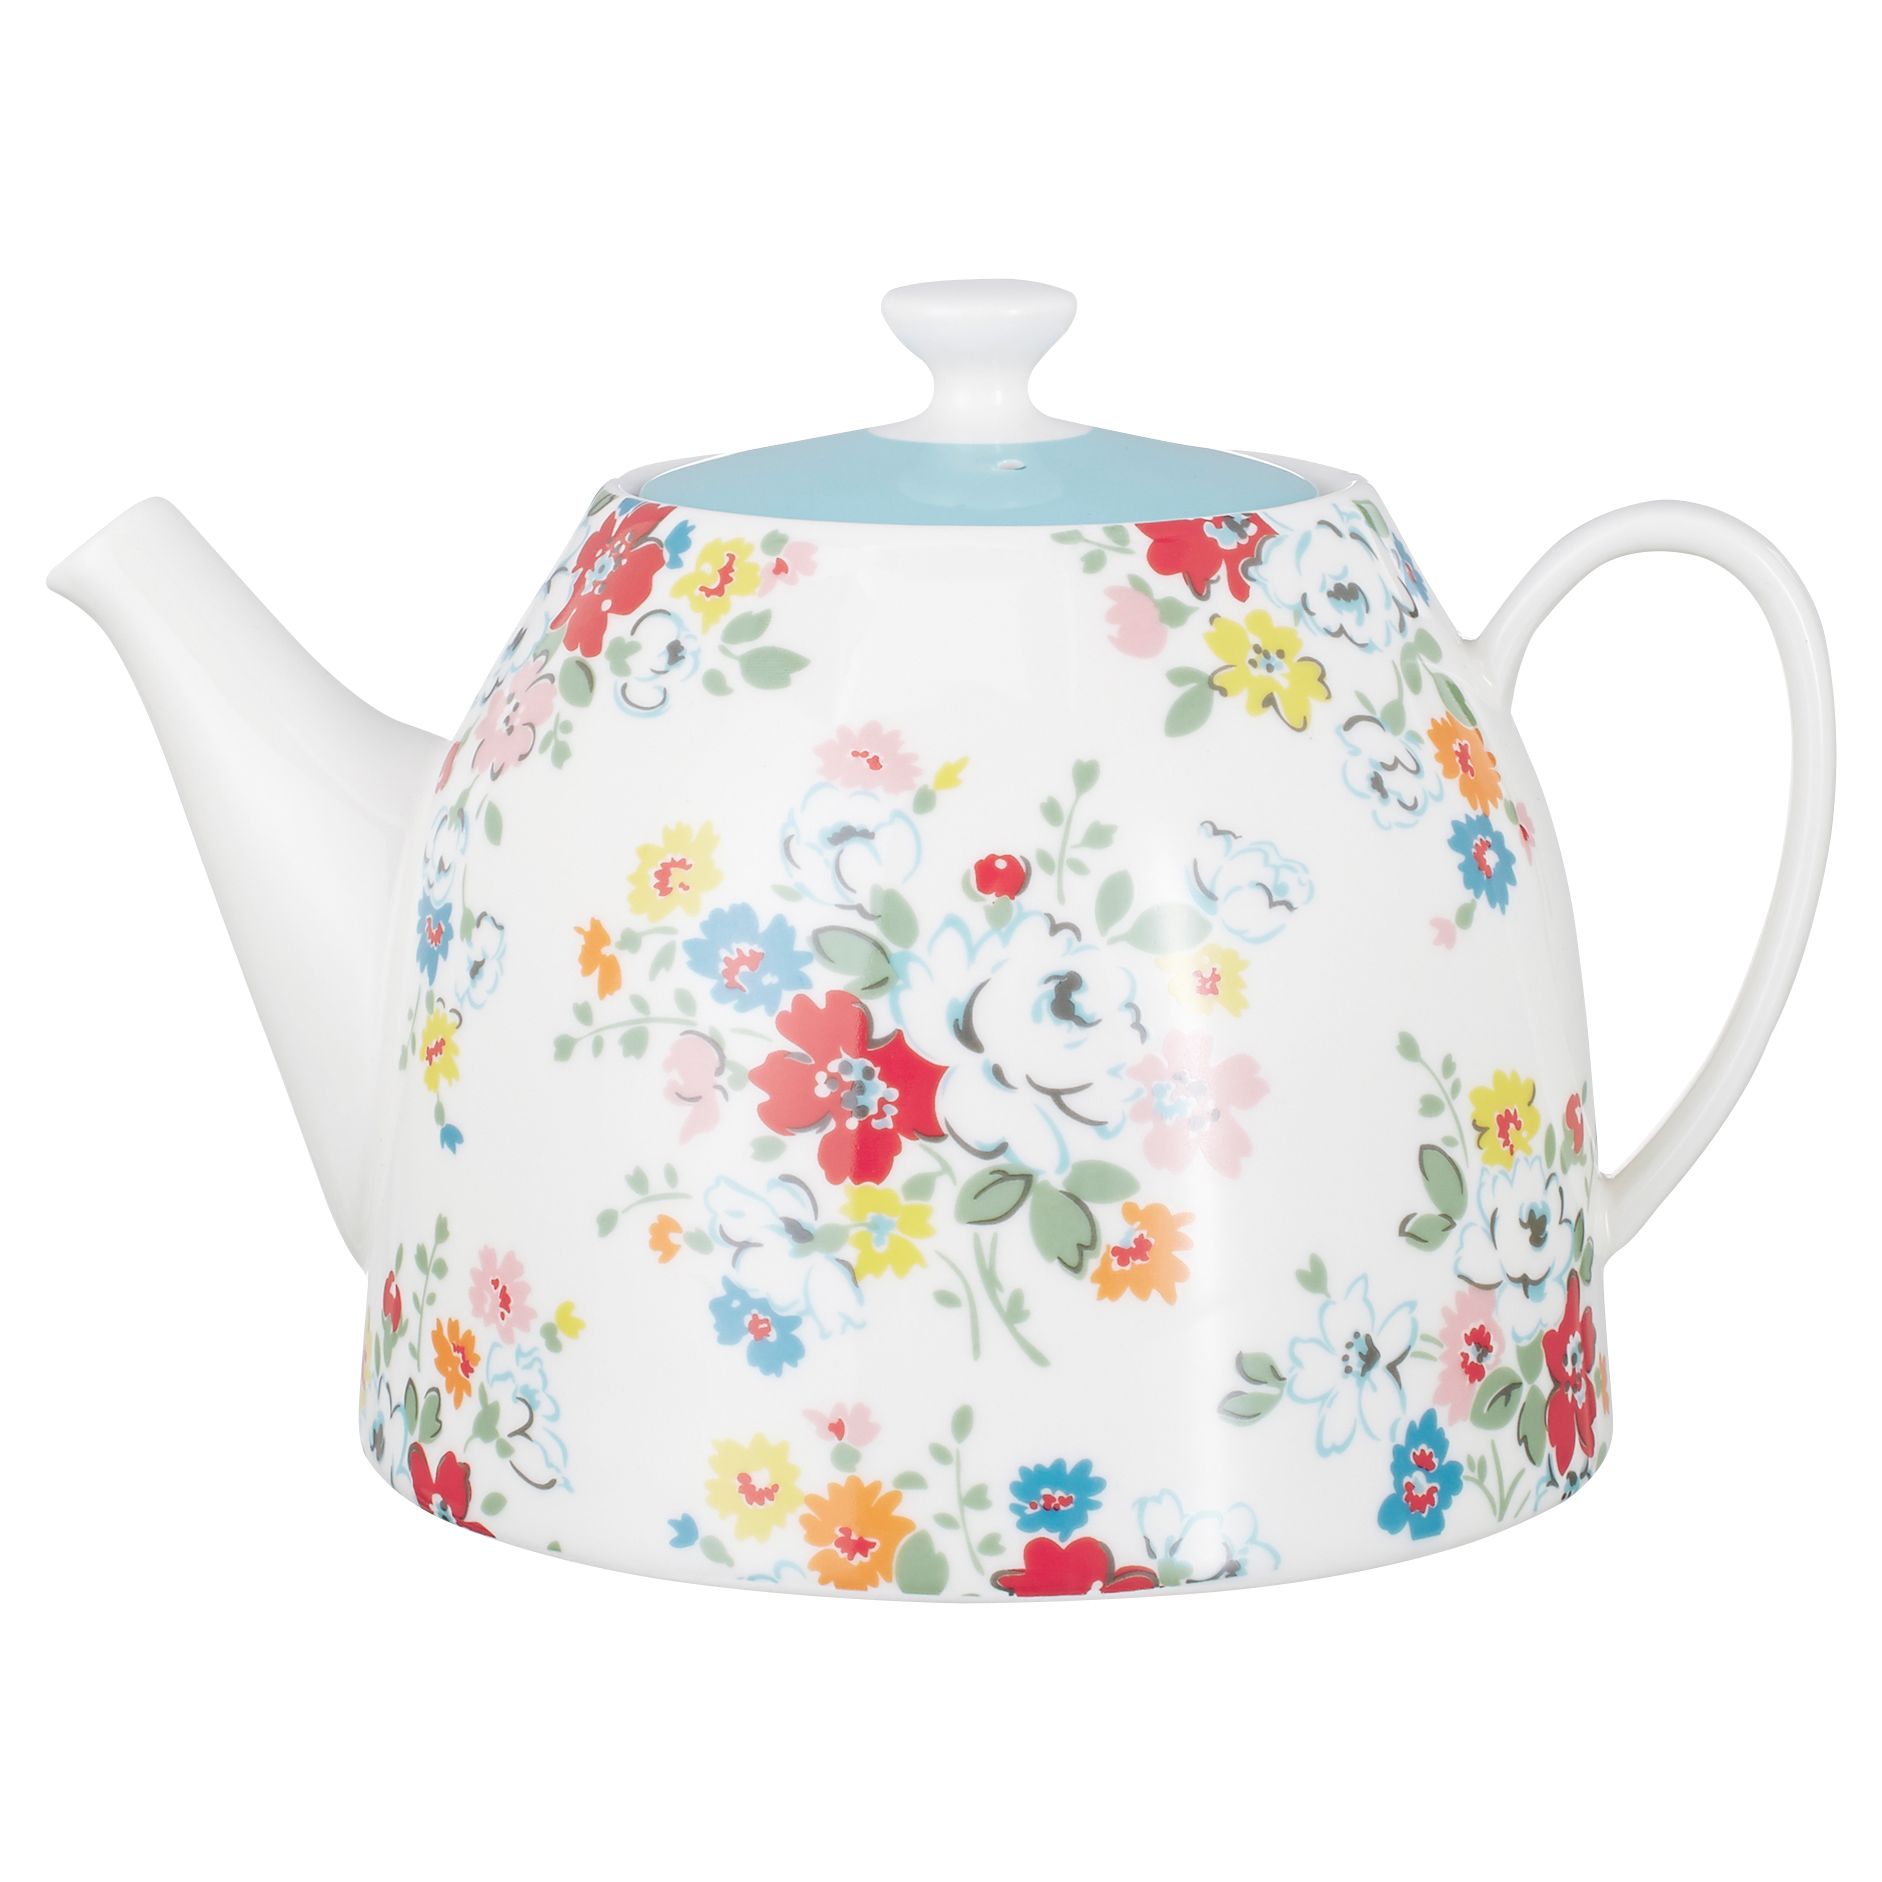 cath kidston teapot set